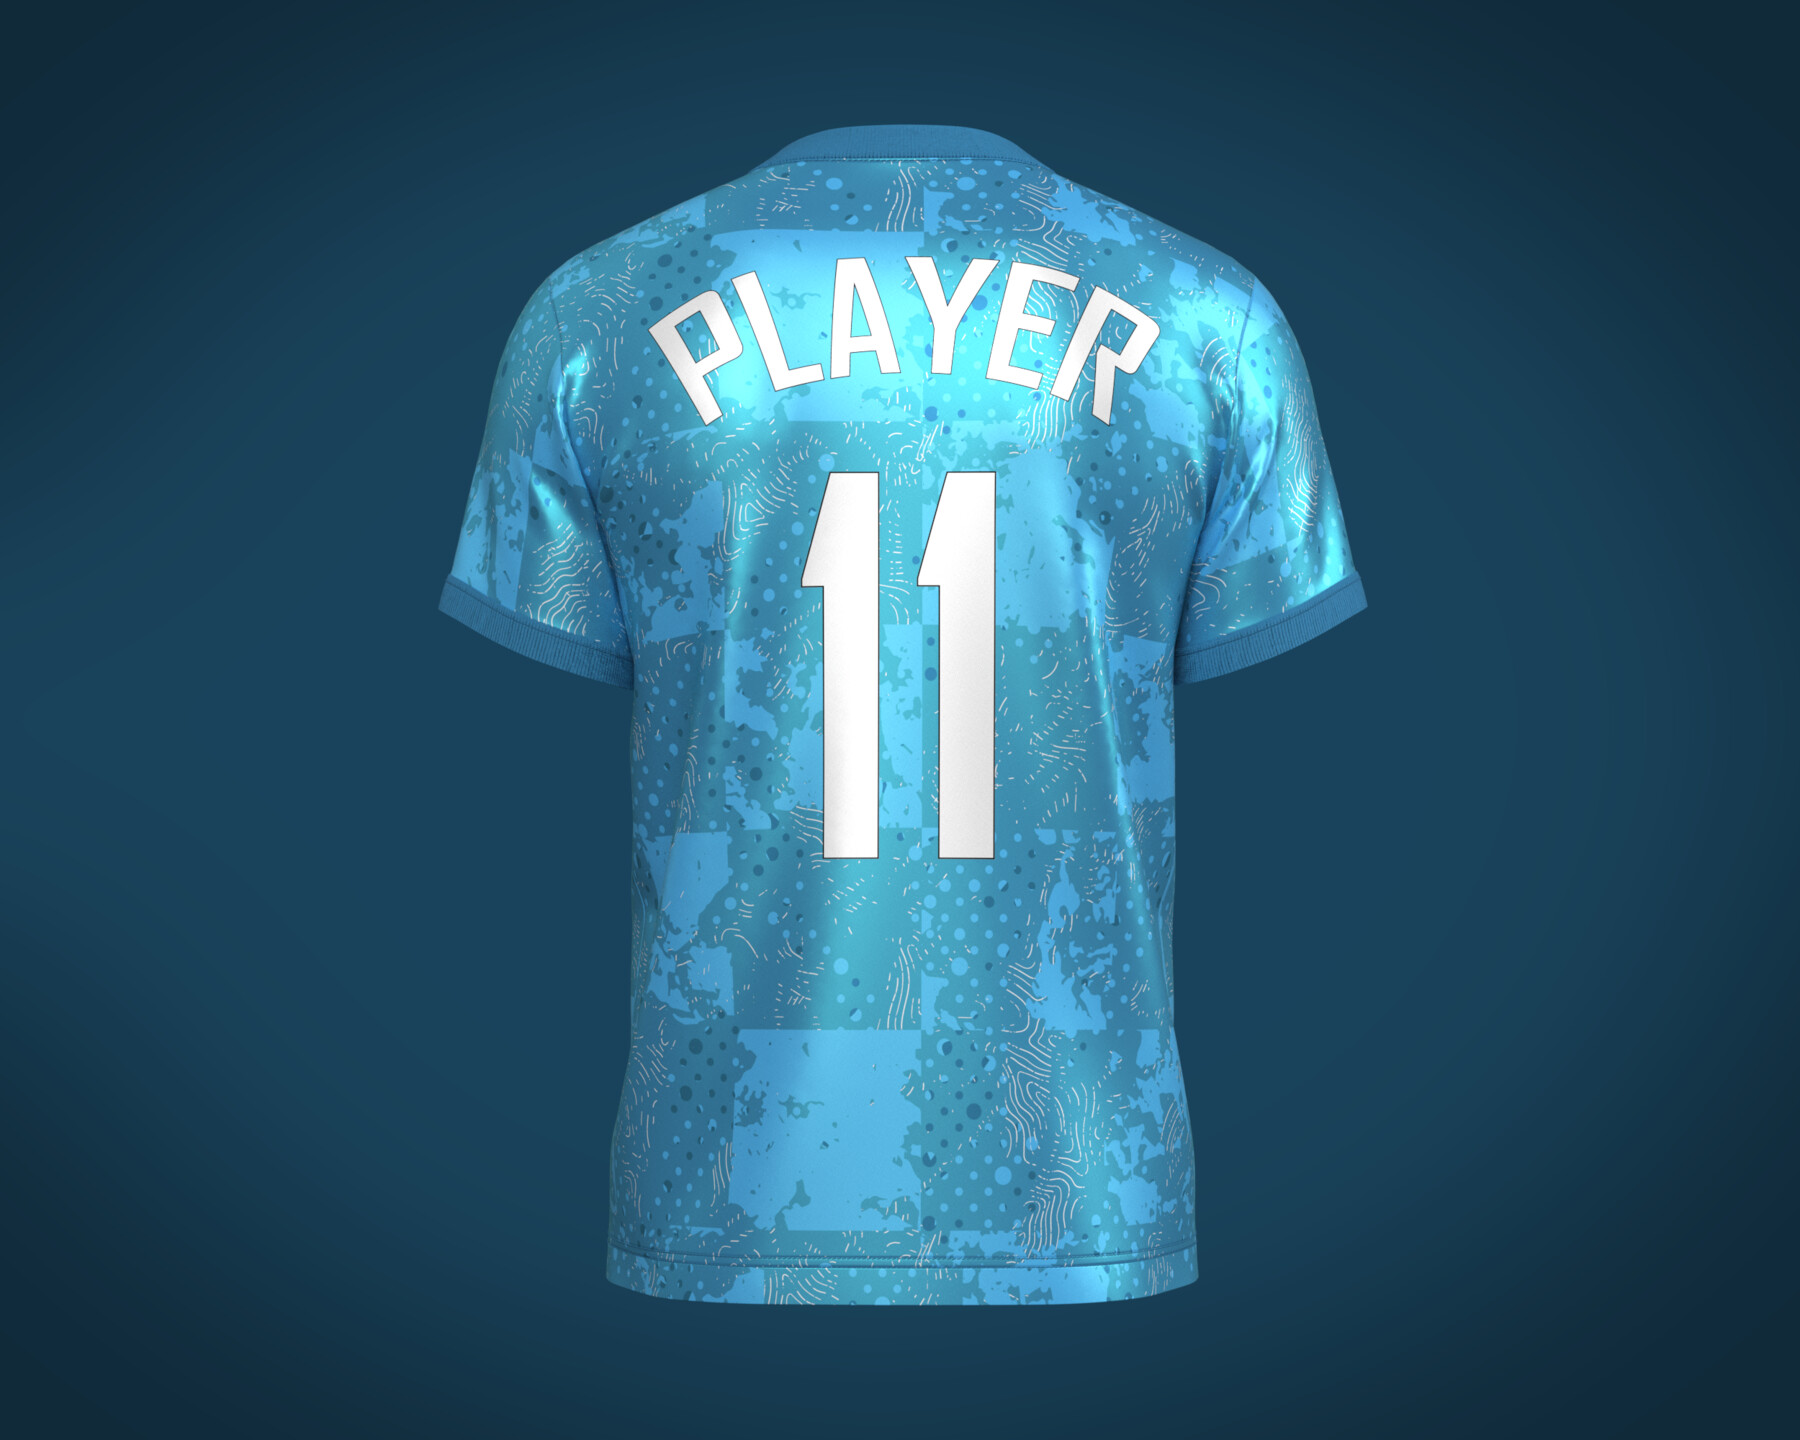 ArtStation - Soccer Football Ocean Blue Jersey Player-11